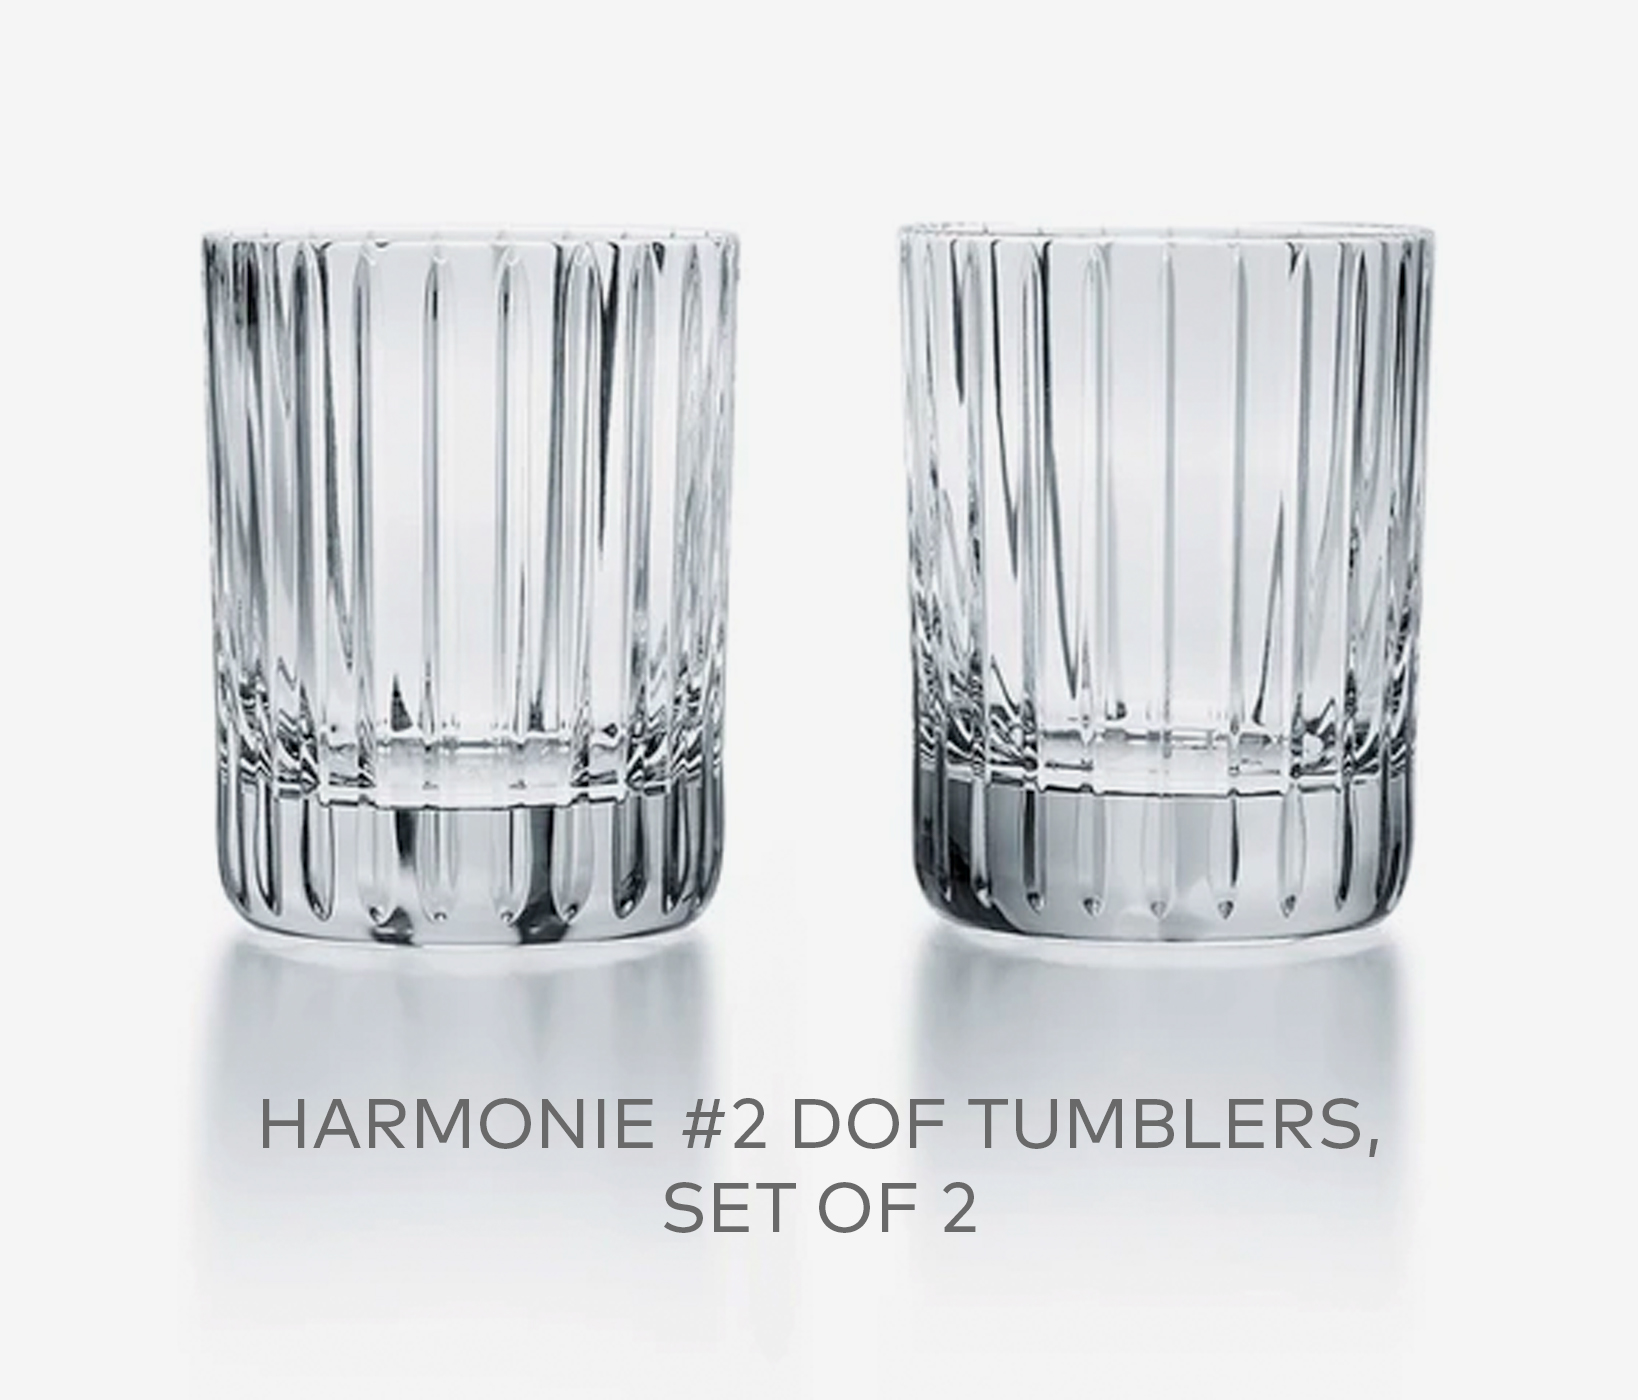 Harmonie #2 DOF Tumblers, Set of 2